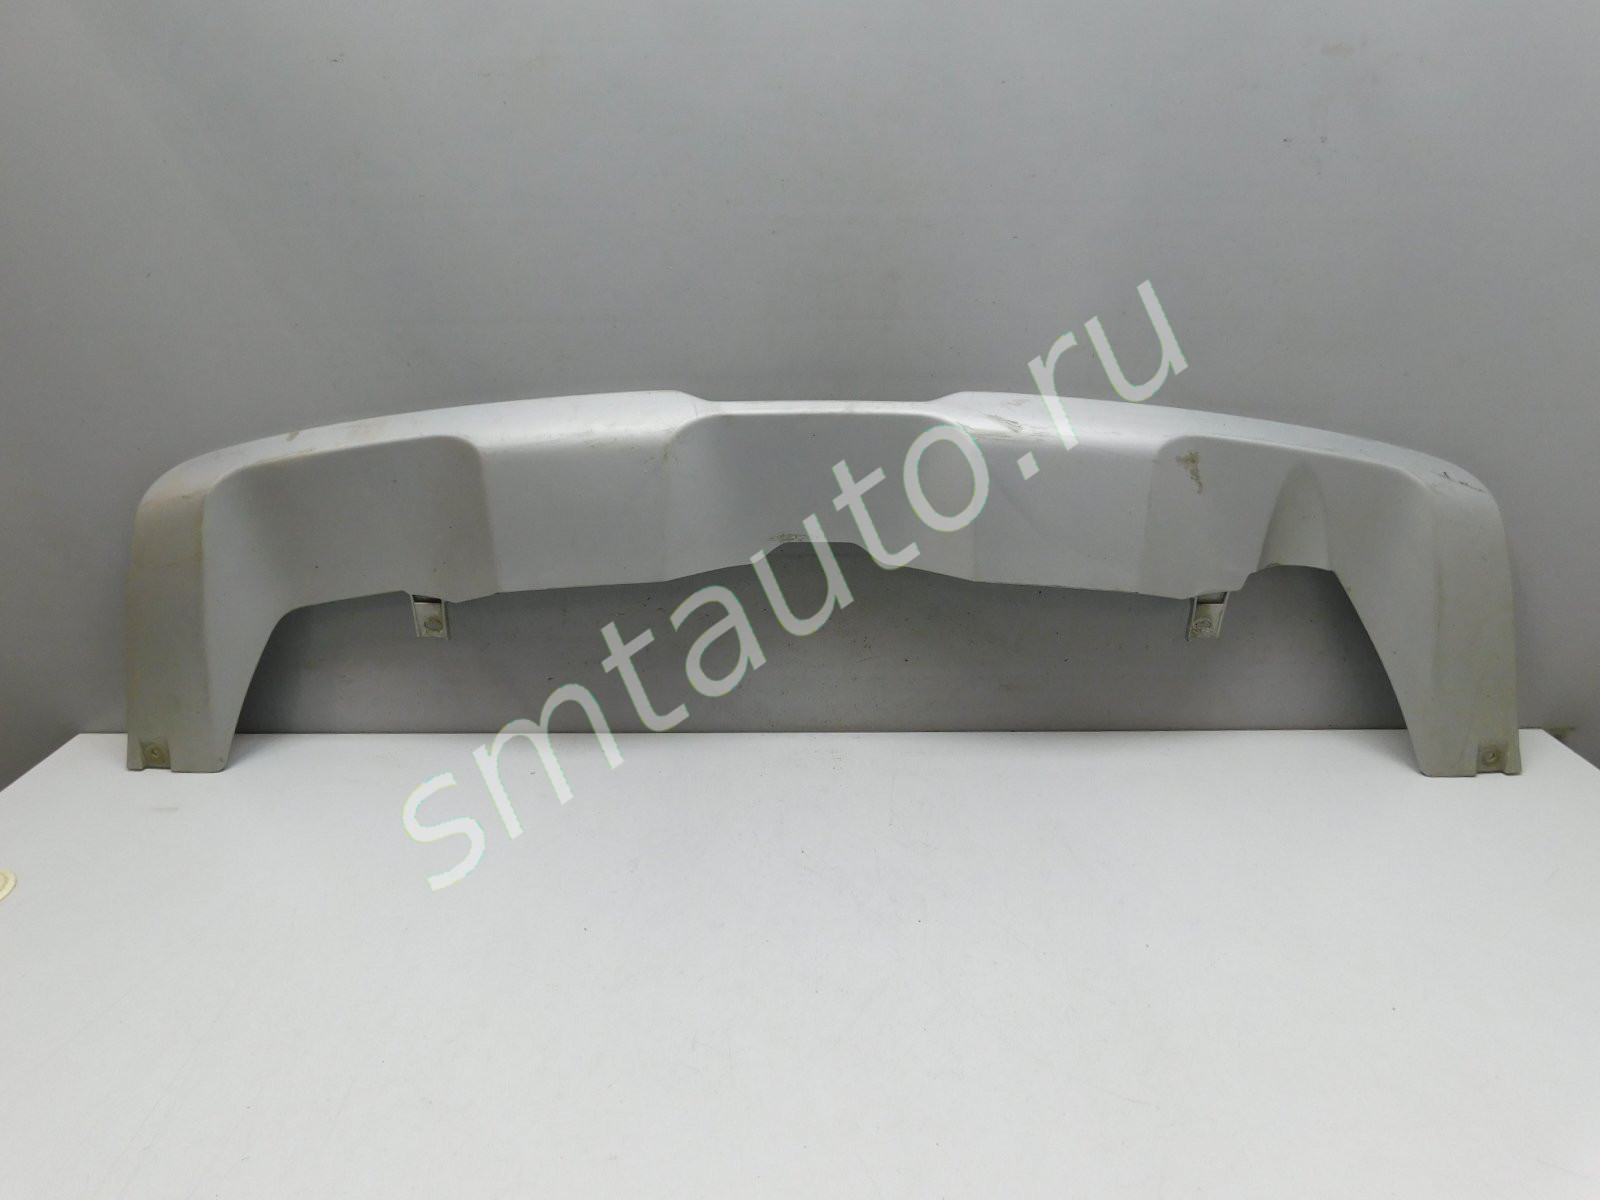 Юбка задняя для Suzuki SX4 2013>, OEM 7187161M (фото)